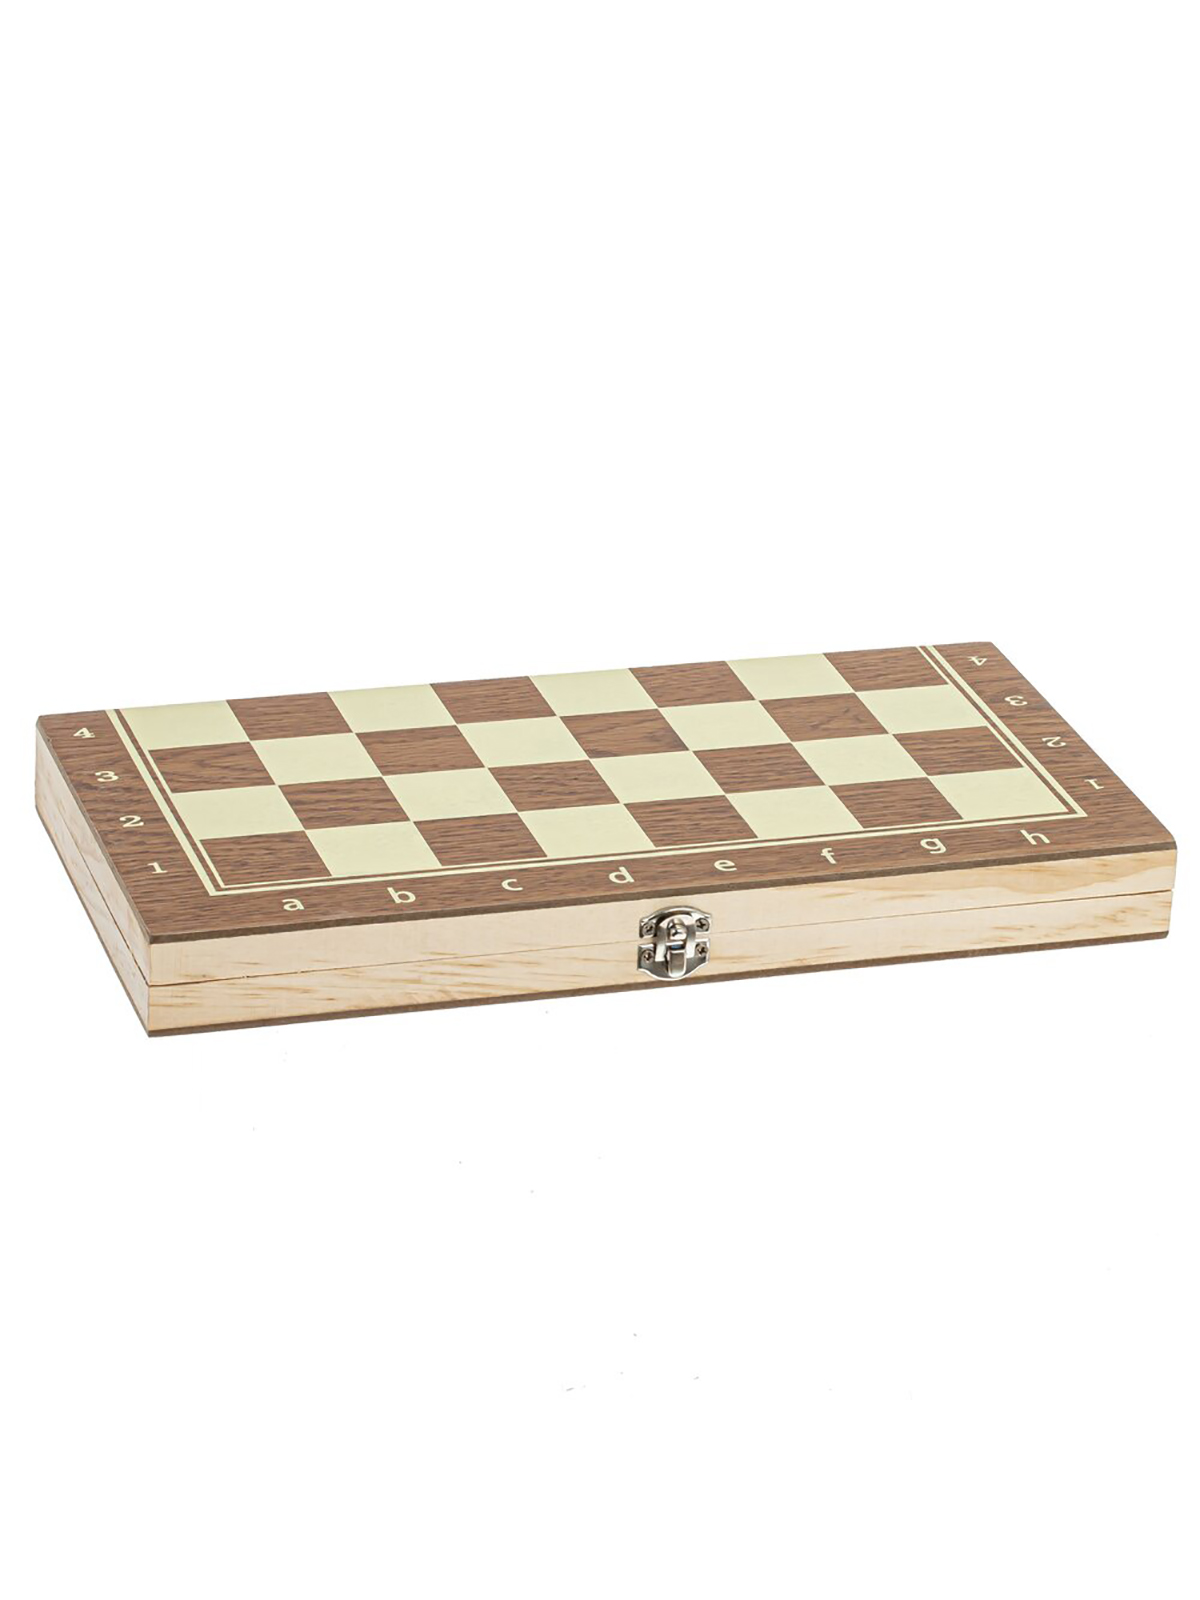 Шахматы шашки нарды 3 в 1 Remecoclub деревянные 796260 29x14,5x3 см шашки деревянные